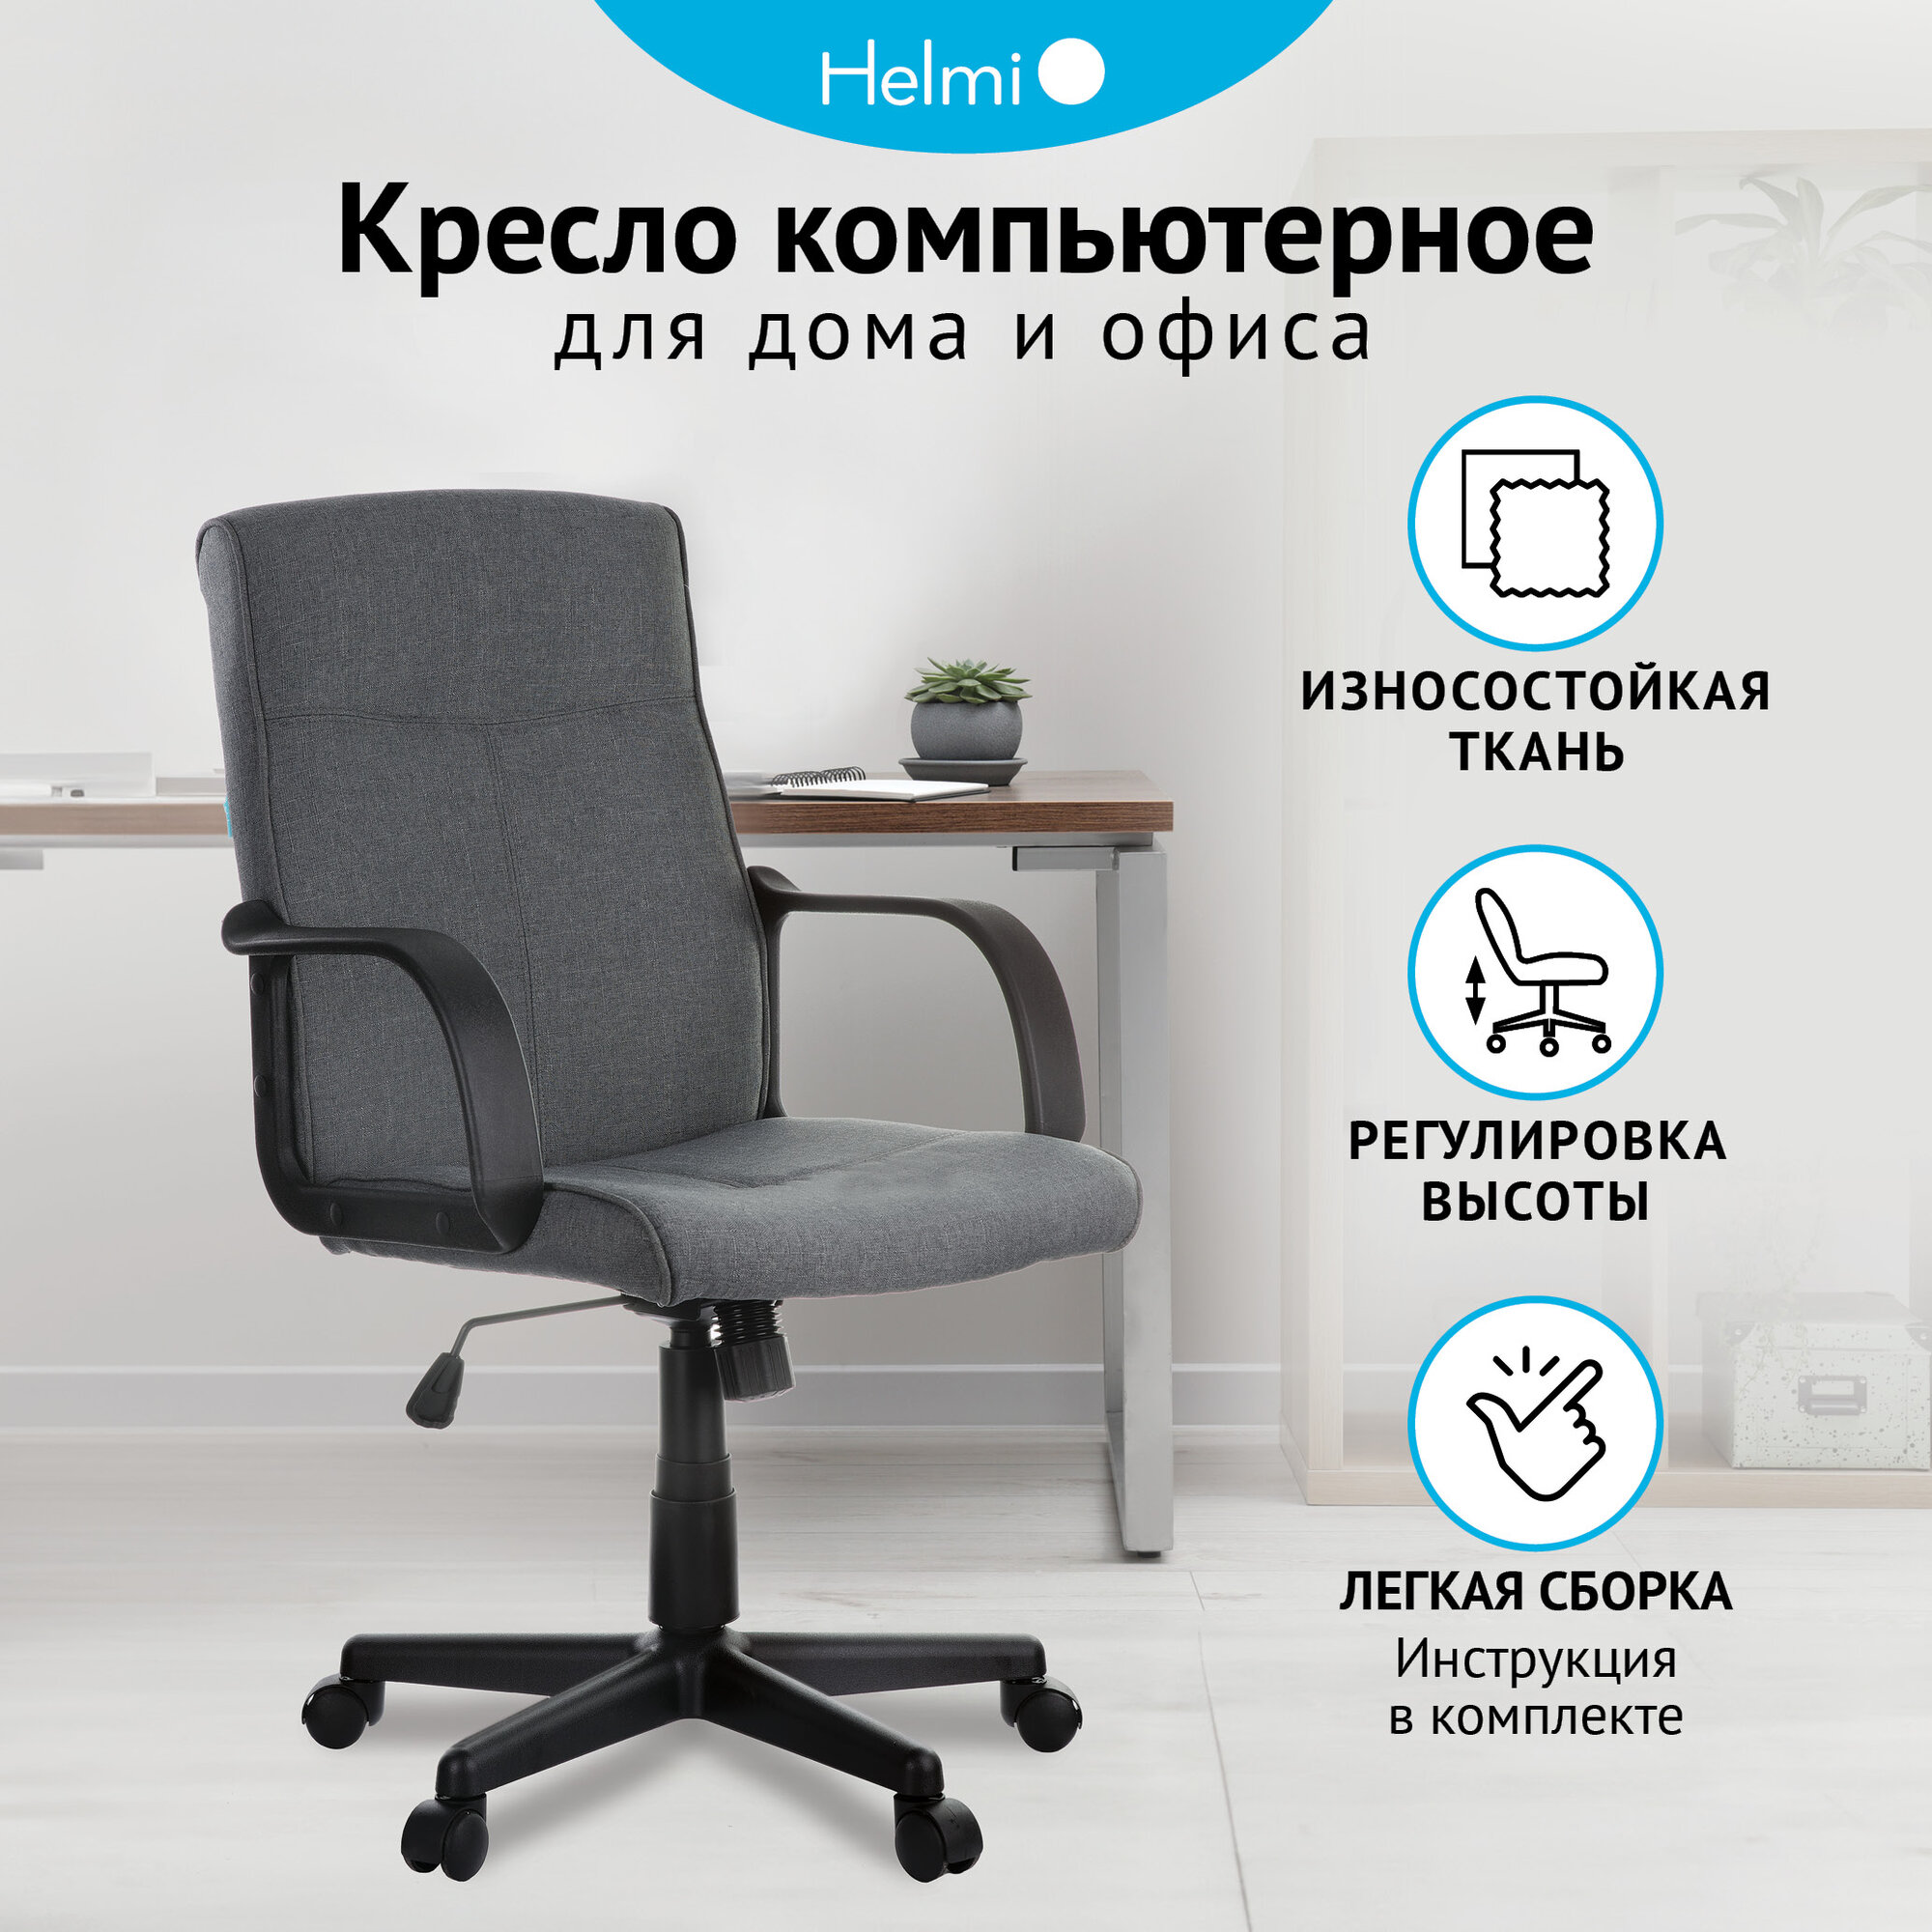 Компьютерное кресло Helmi HL-M03 Referent офисное